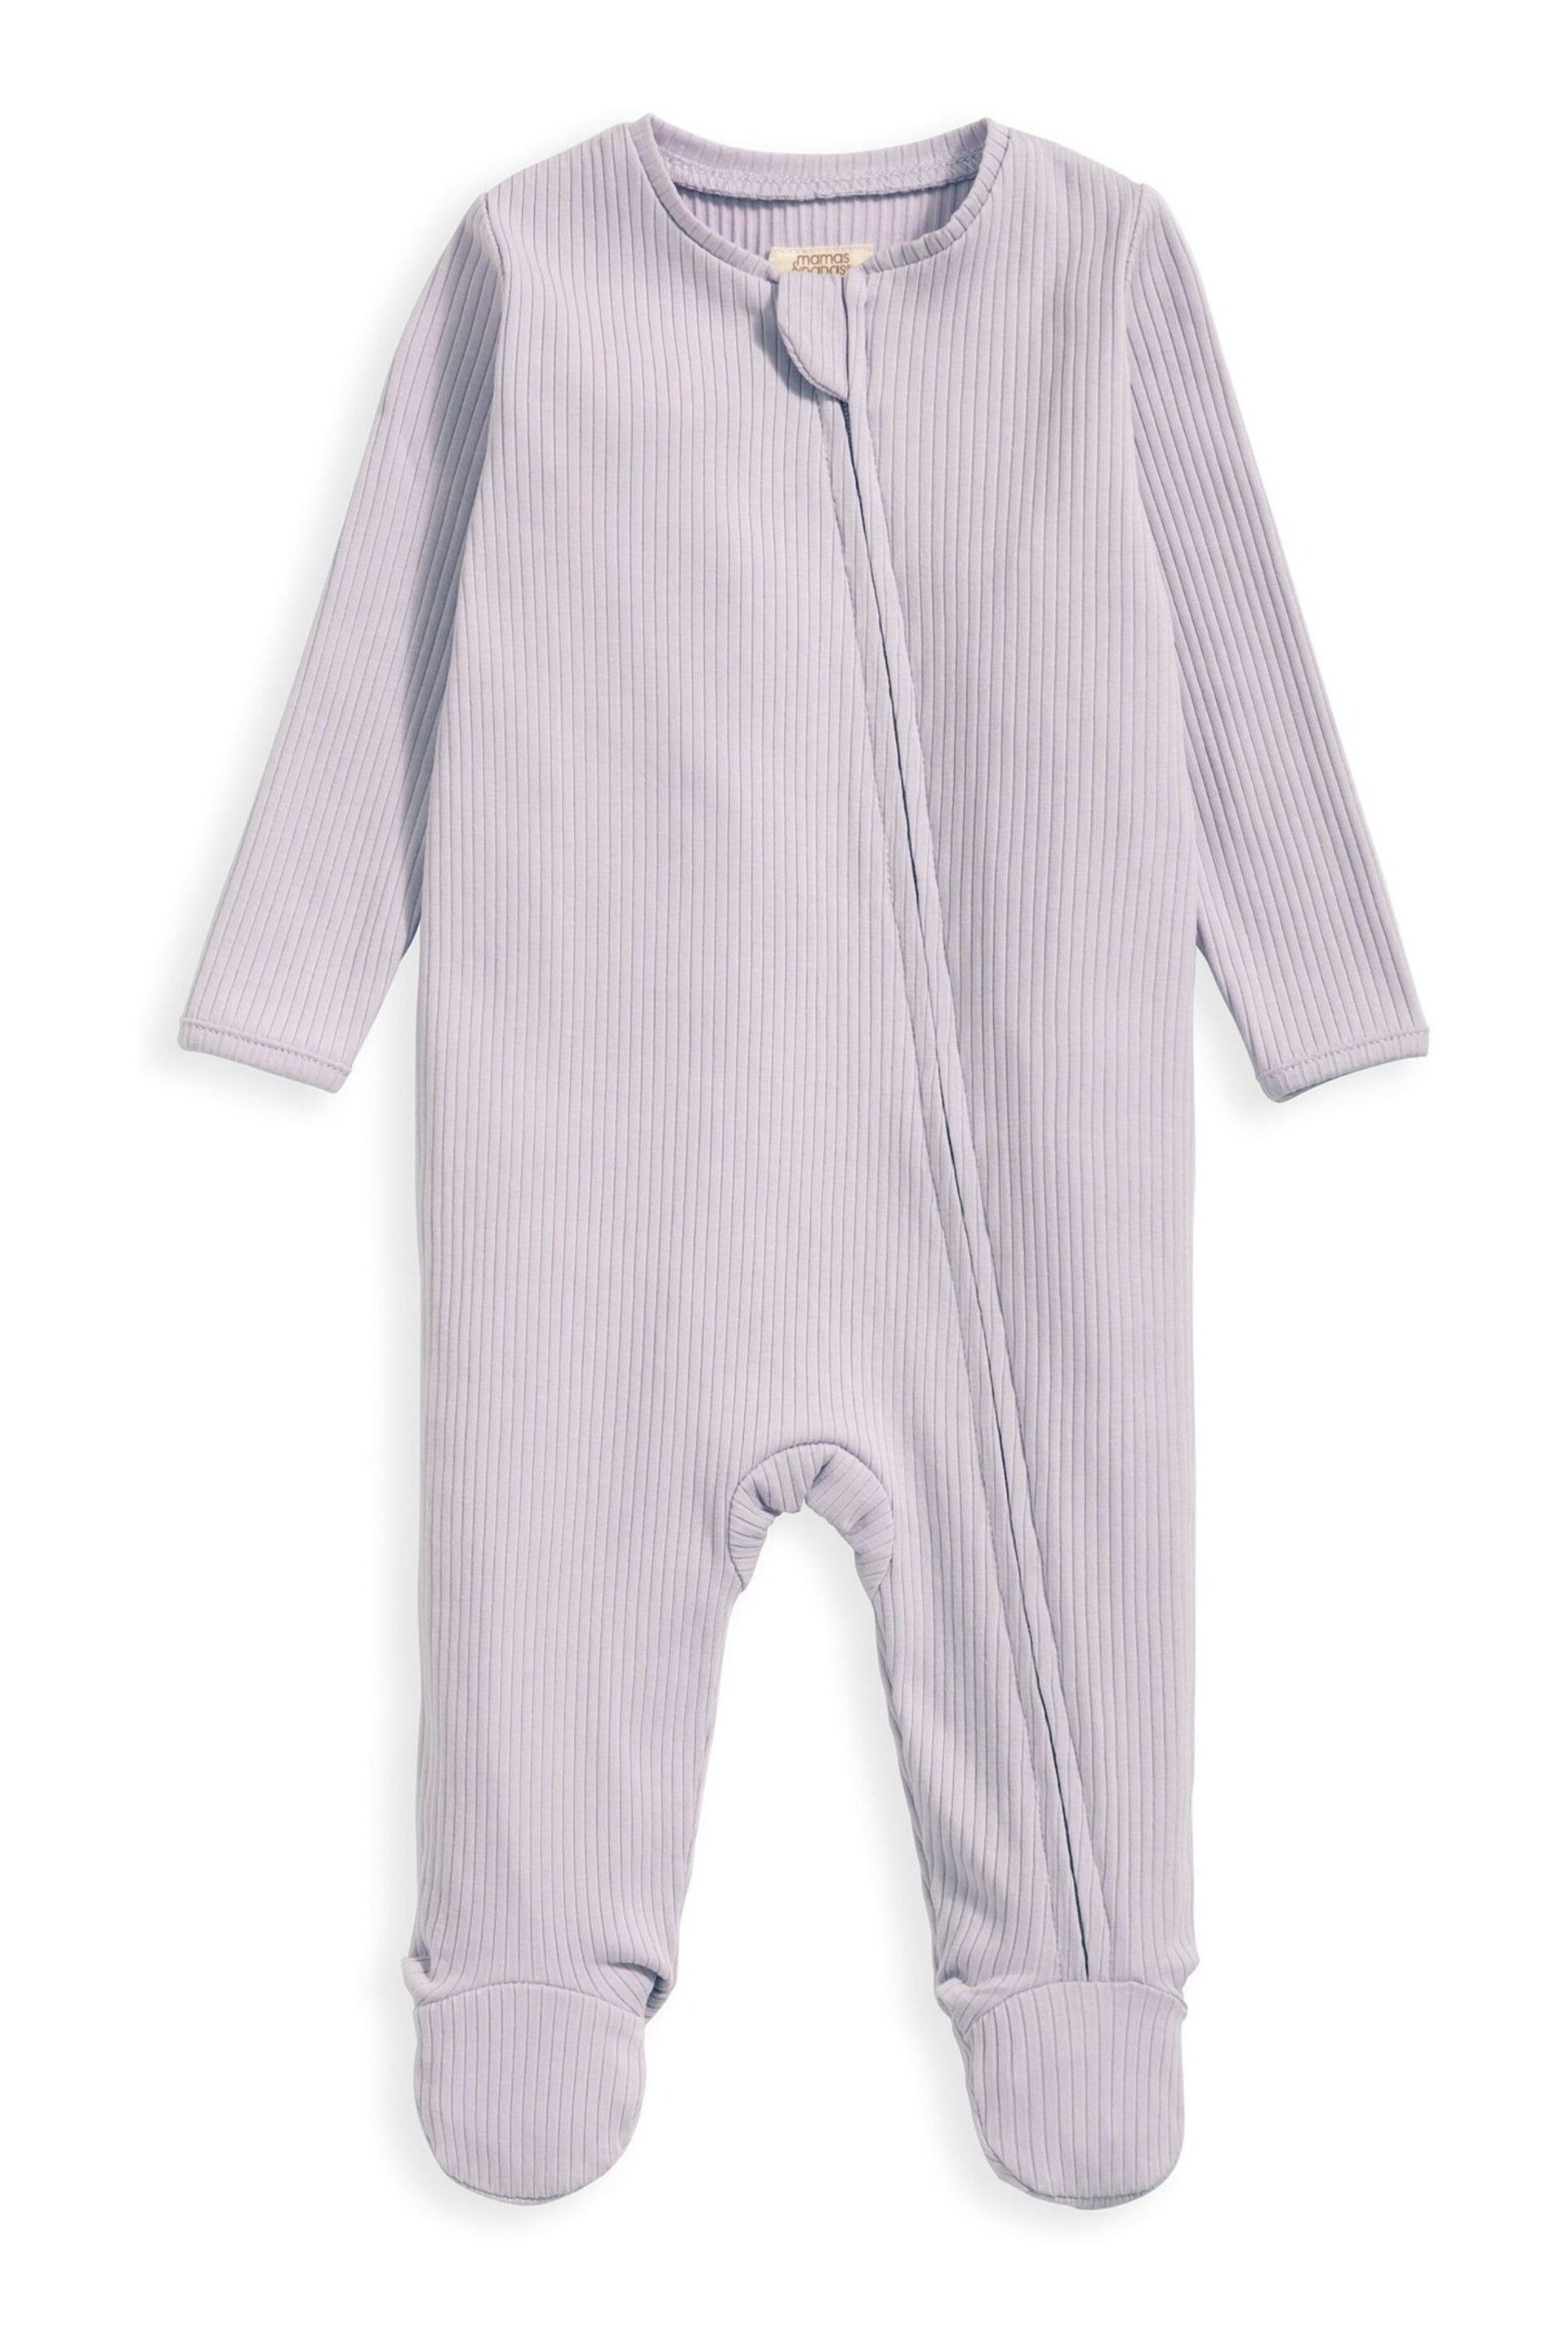 Mamas & Papas Purple Organic Rib Heather Zip Sleepsuit - Image 3 of 4